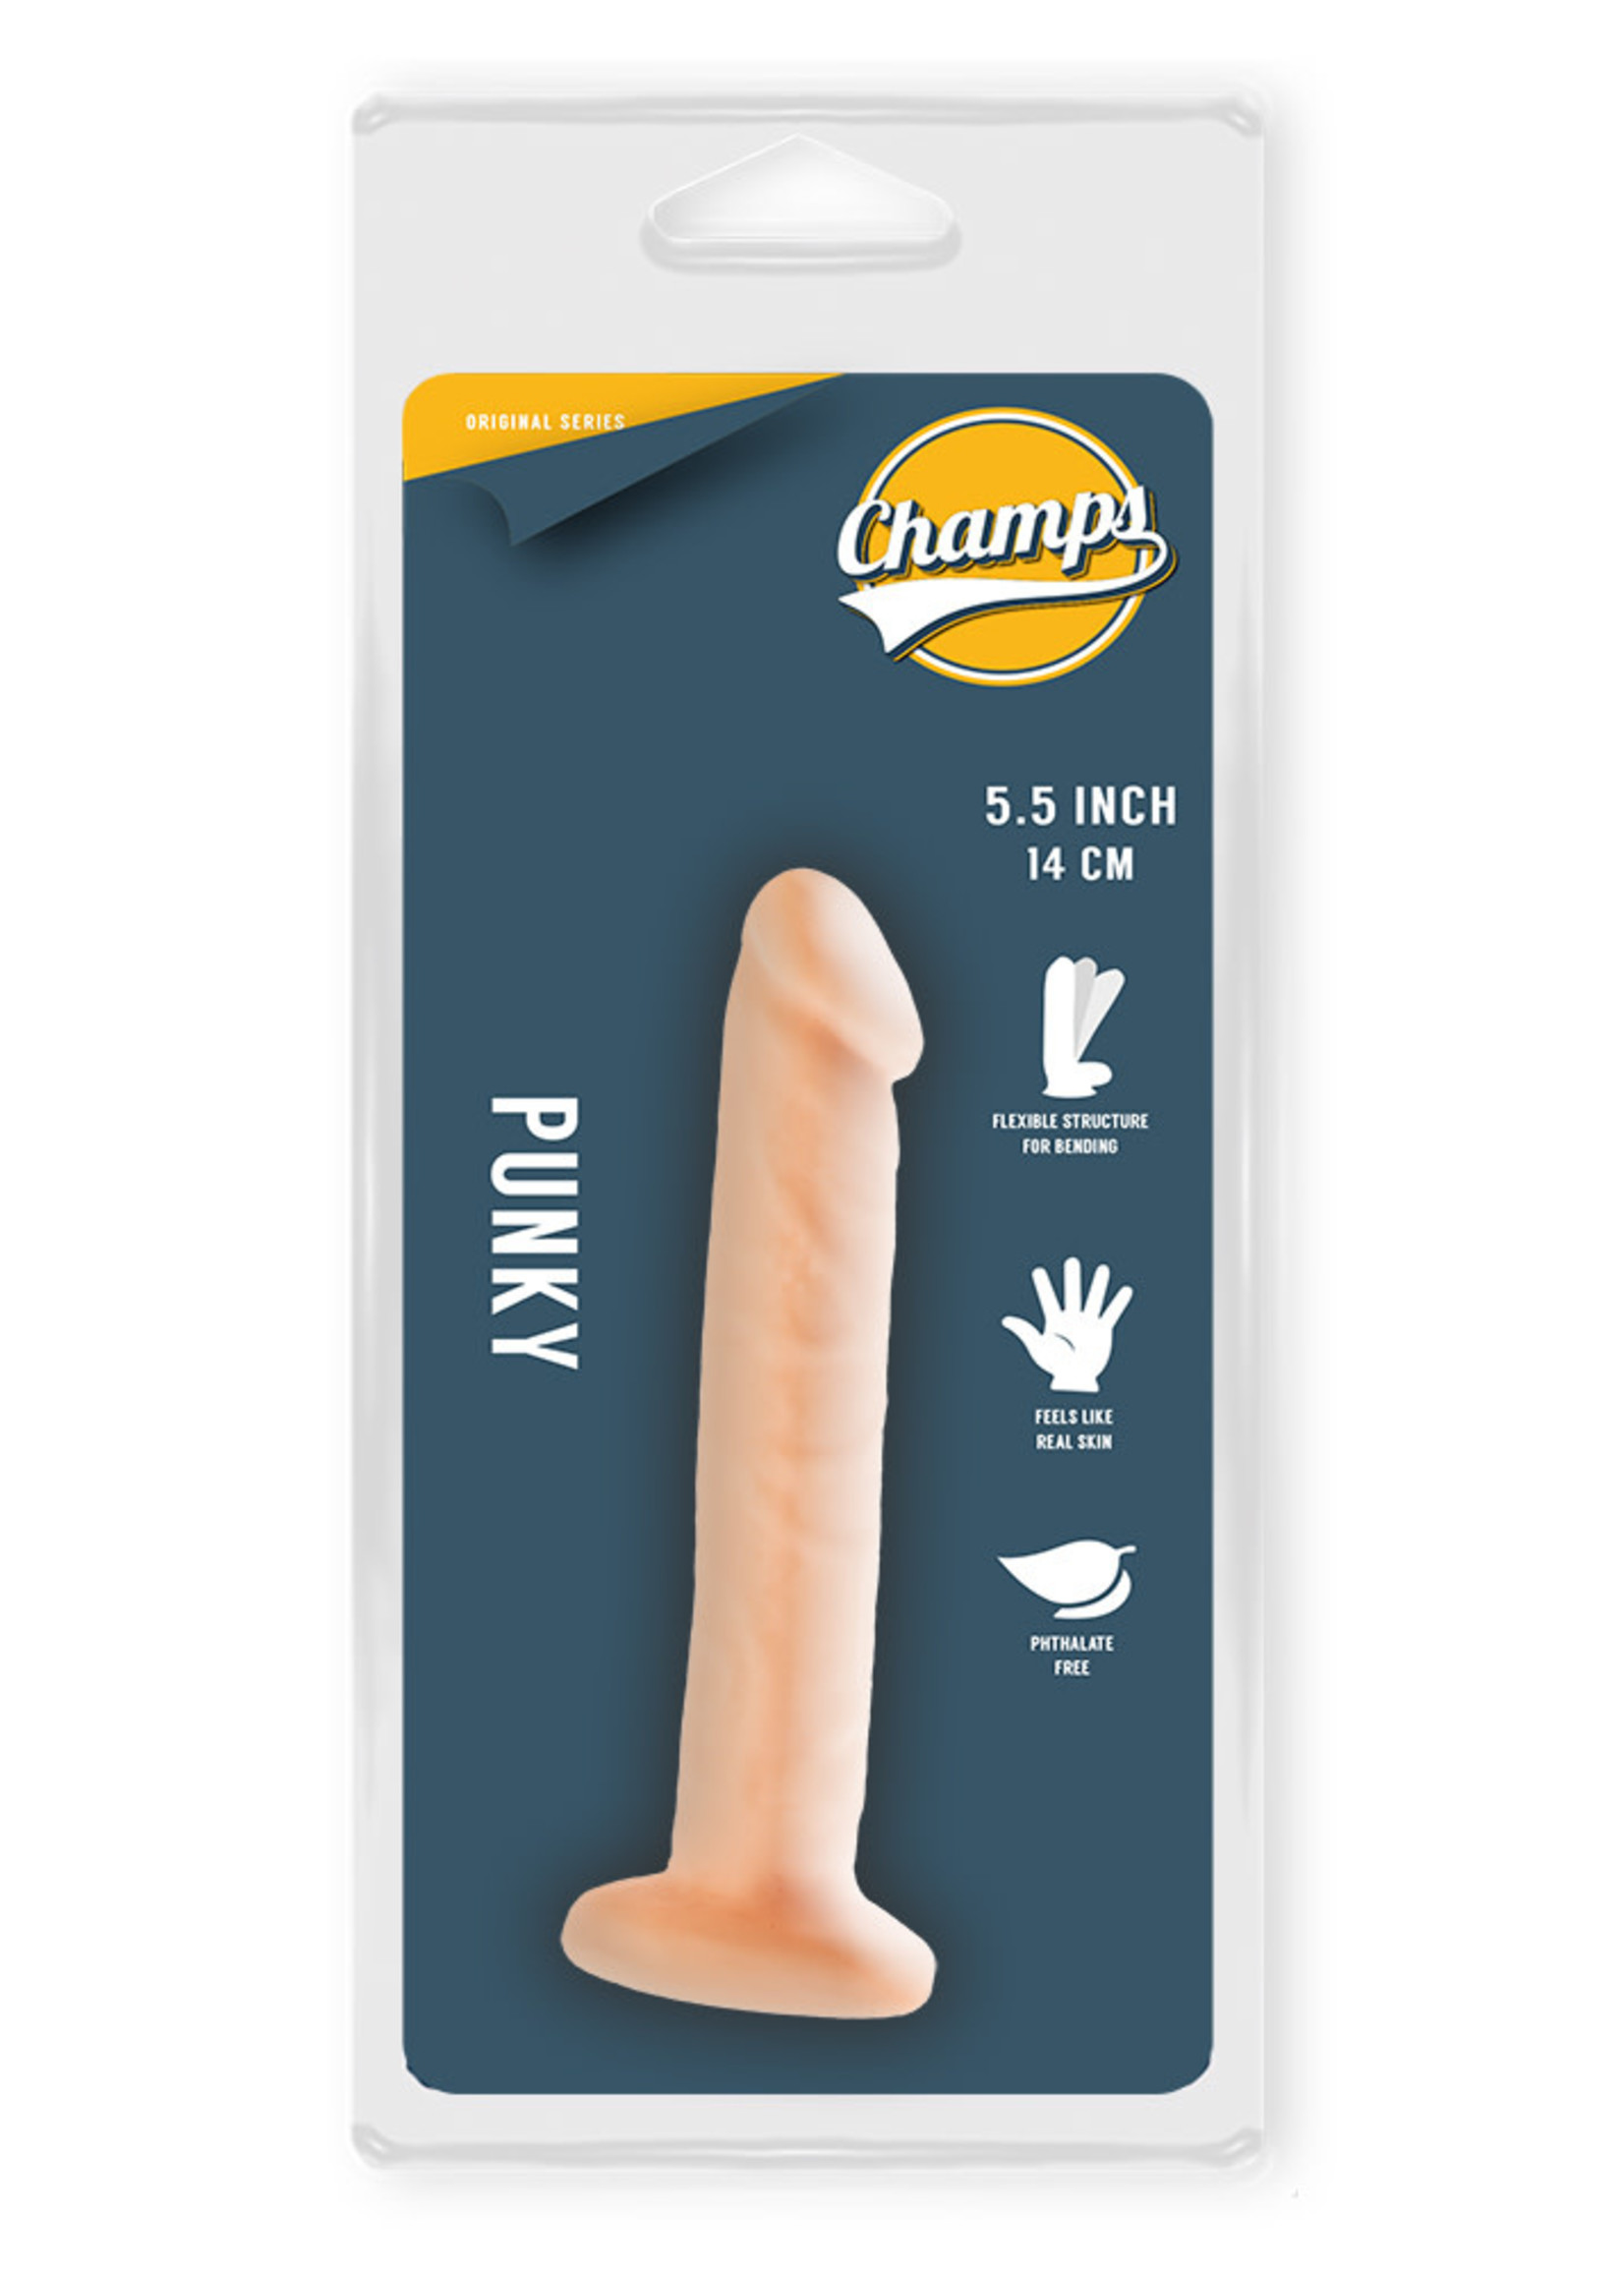 Champs Punky original dildo 5.5 inch / 14 cm flesh